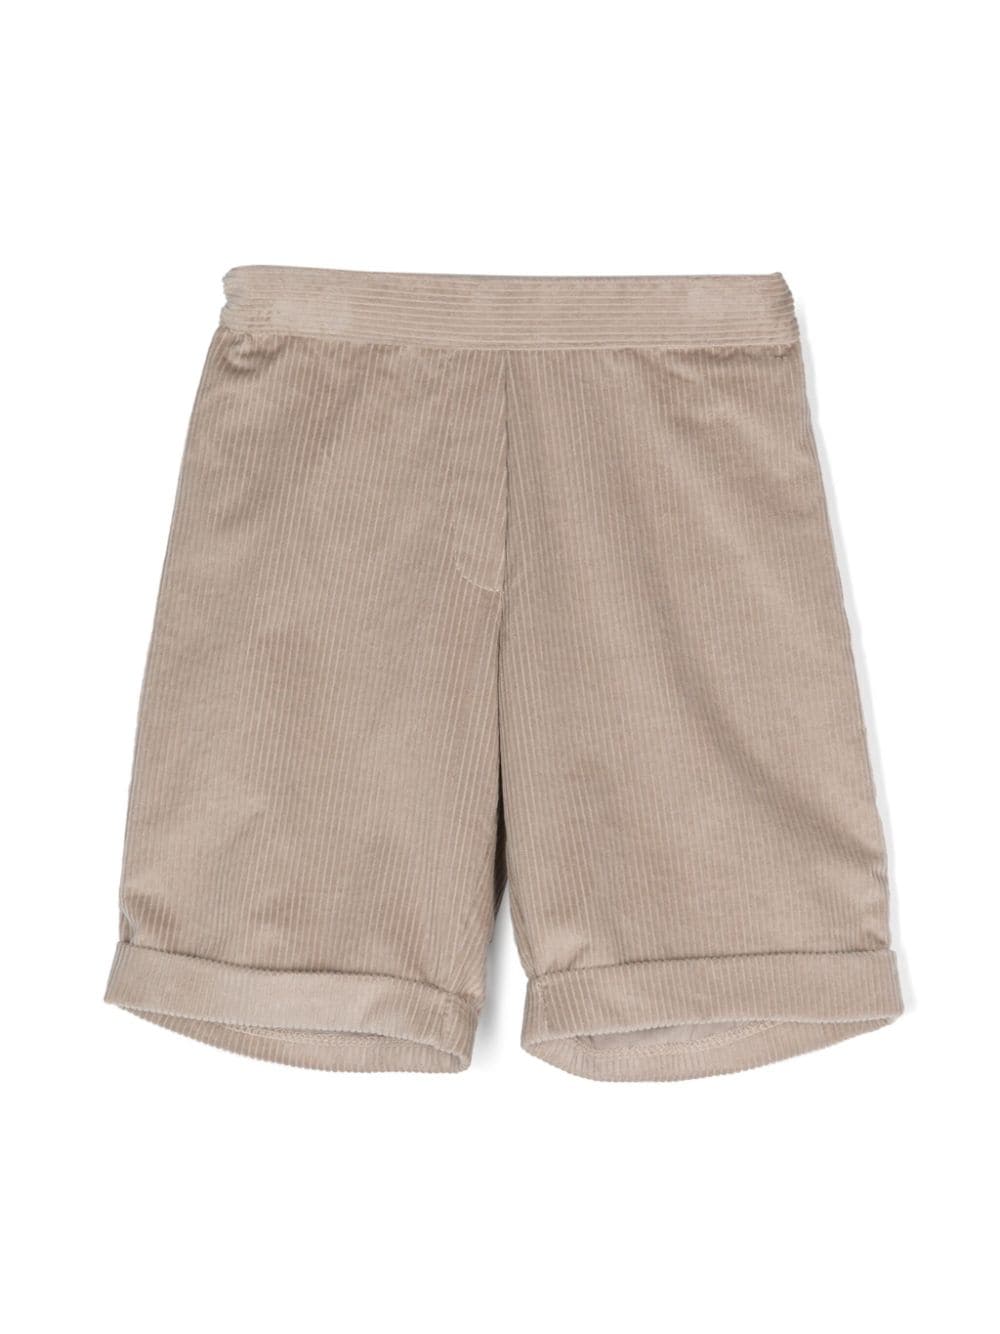 Siola corduroy cotton shorts - Neutrals von Siola